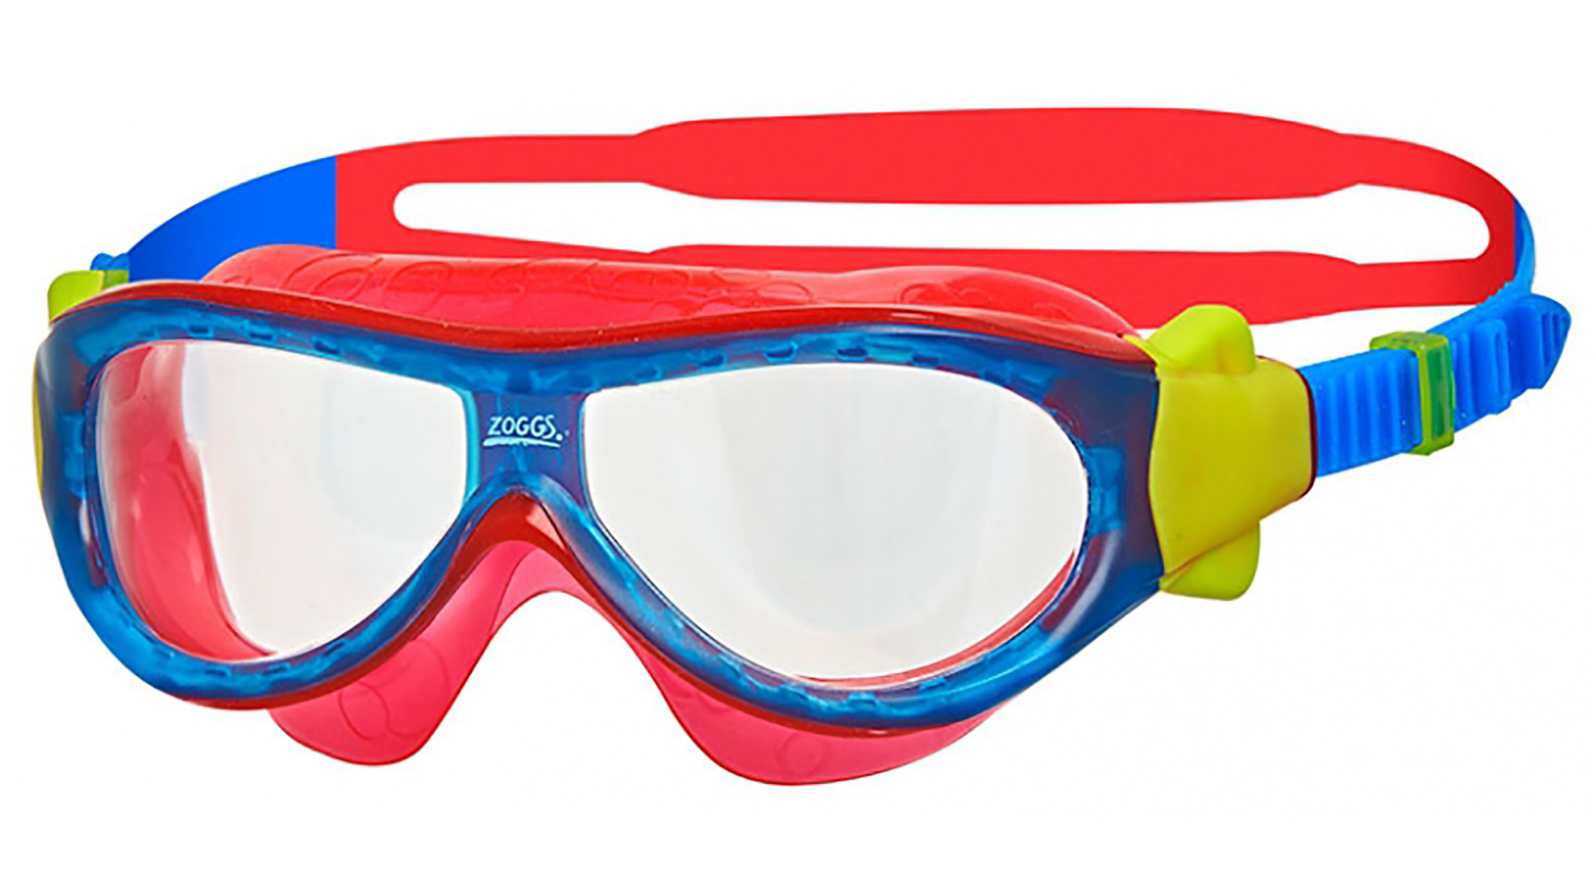 ZOGGS Очки-маска для плавания Phantom Kids (красный/голубой) zoggs очки для плавания raptor hcb mirror золото